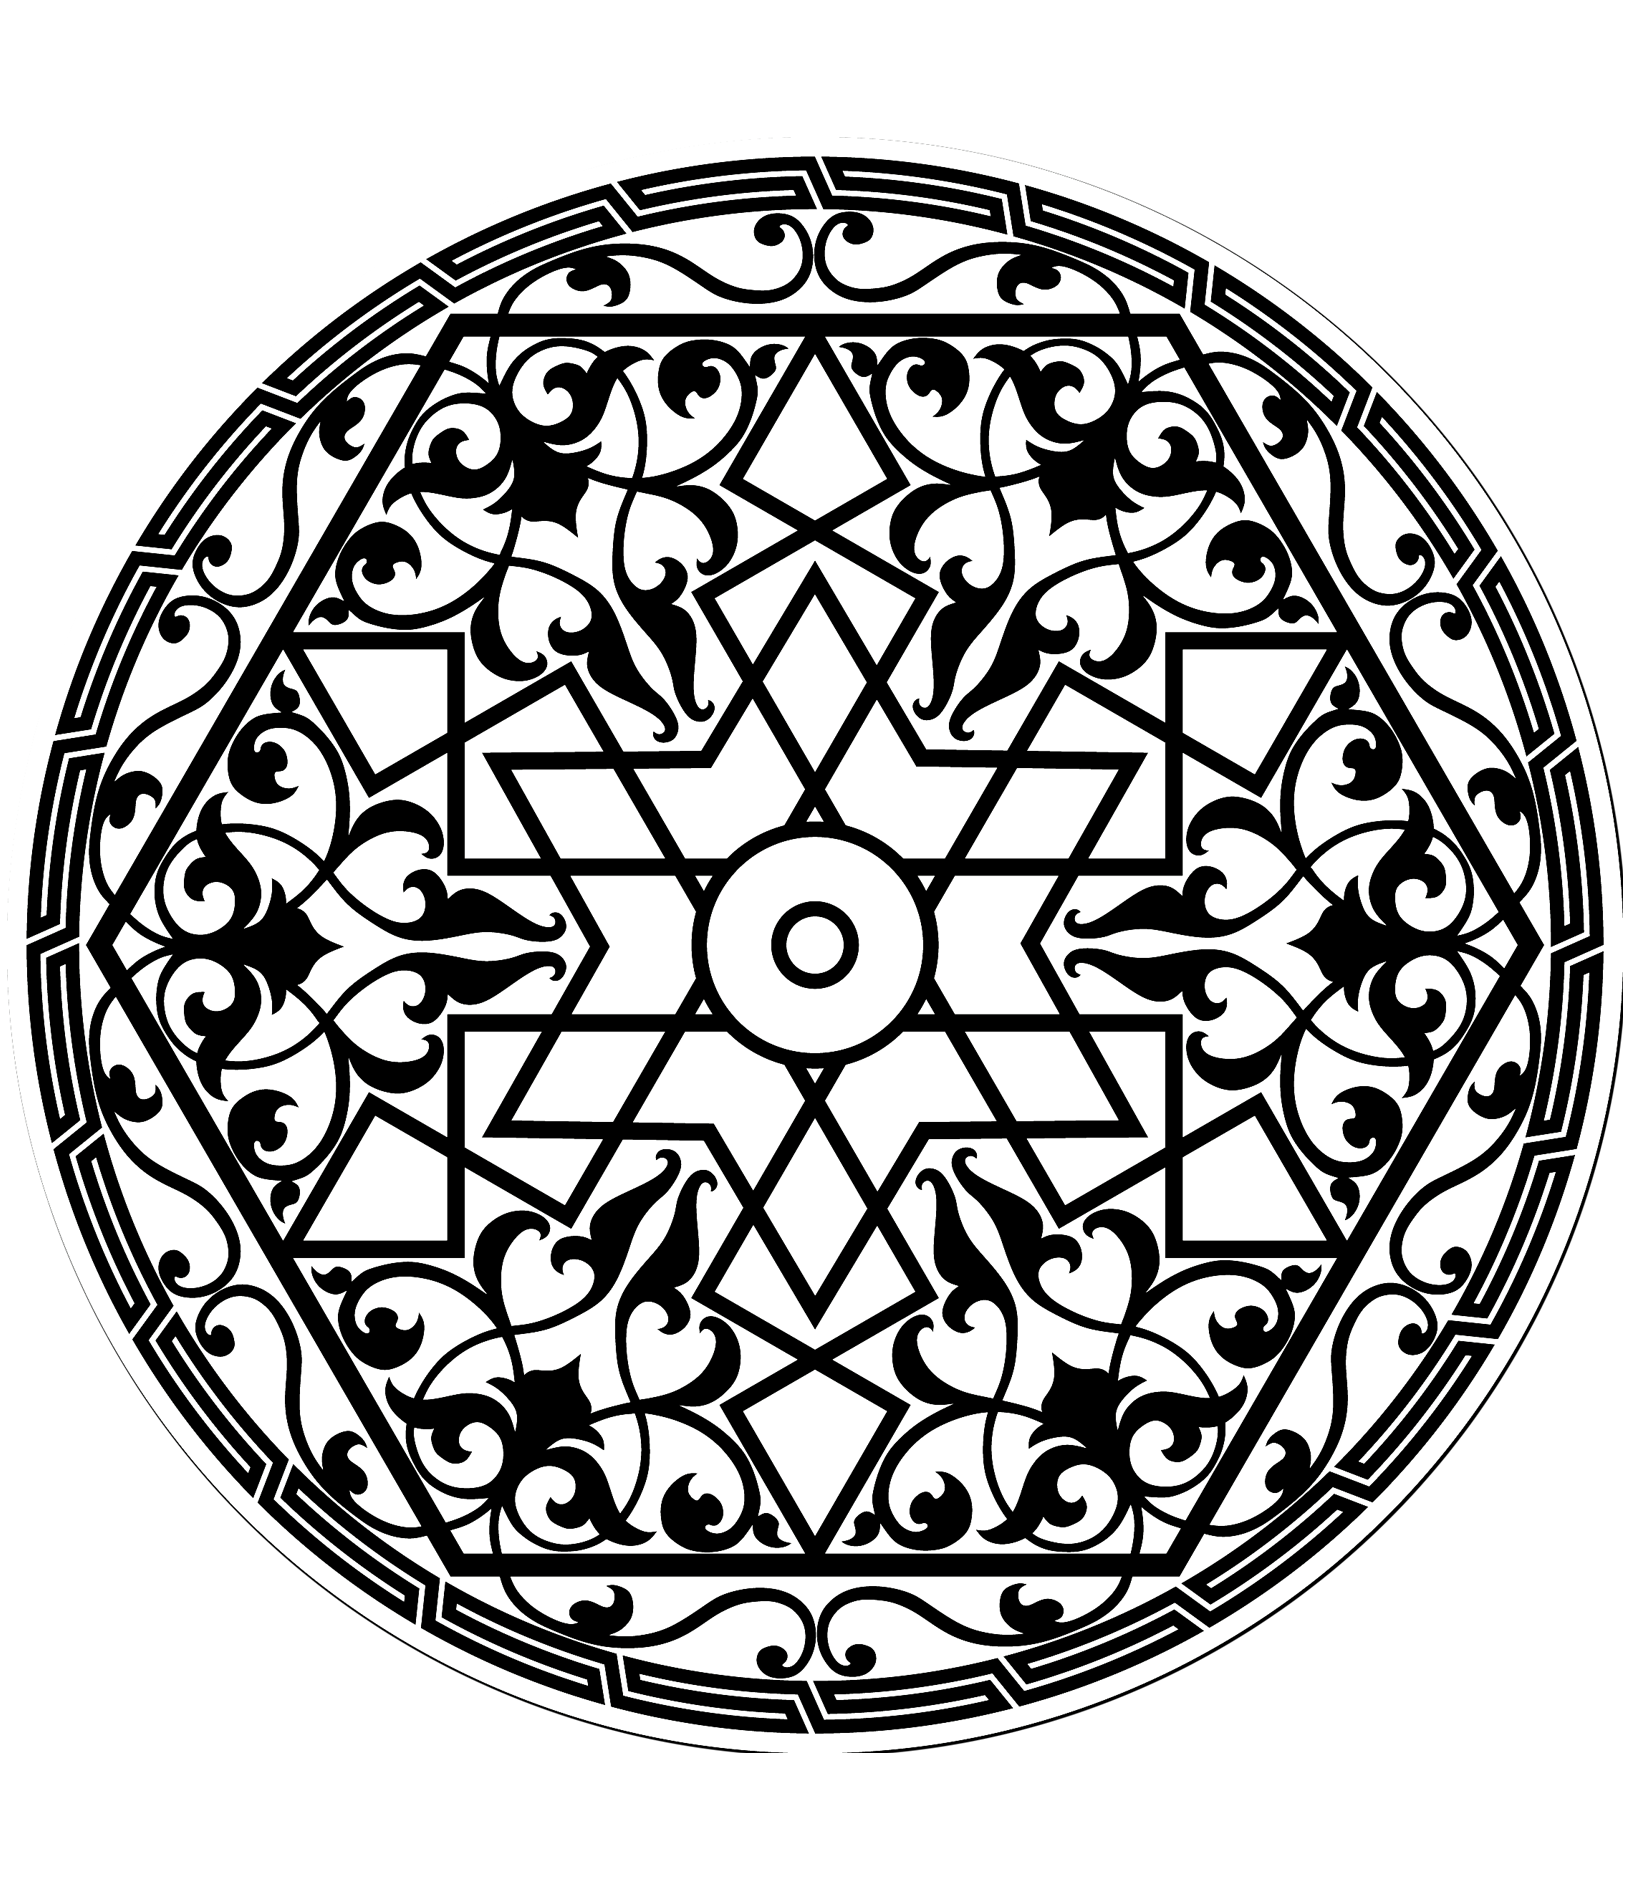 Desenho de padrão árabe com uma estrela no meio